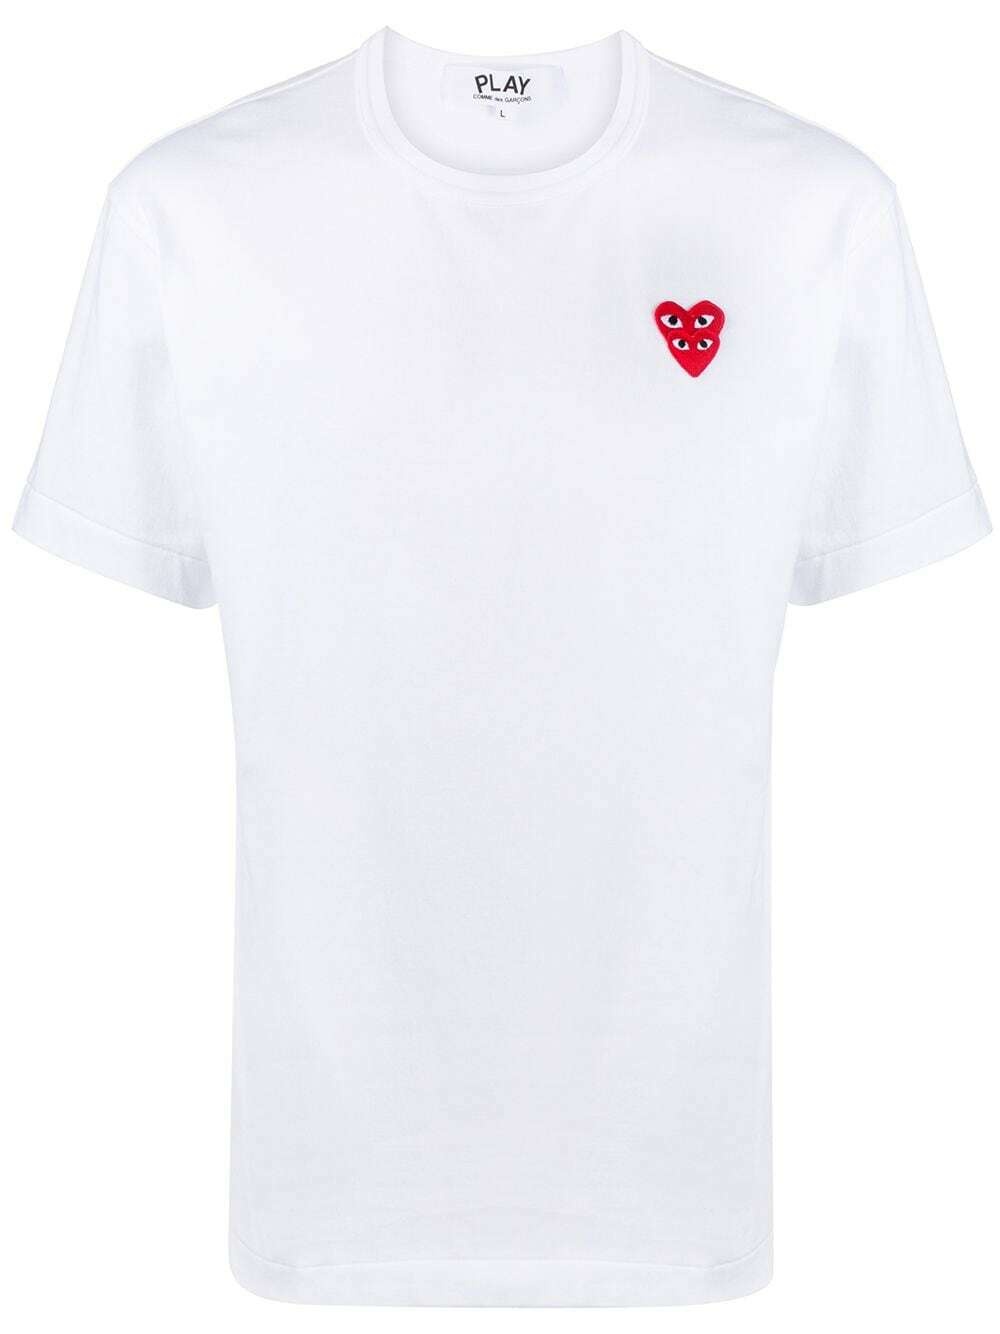 Photo: COMME DES GARCONS PLAY - Logo Cotton T-shirt